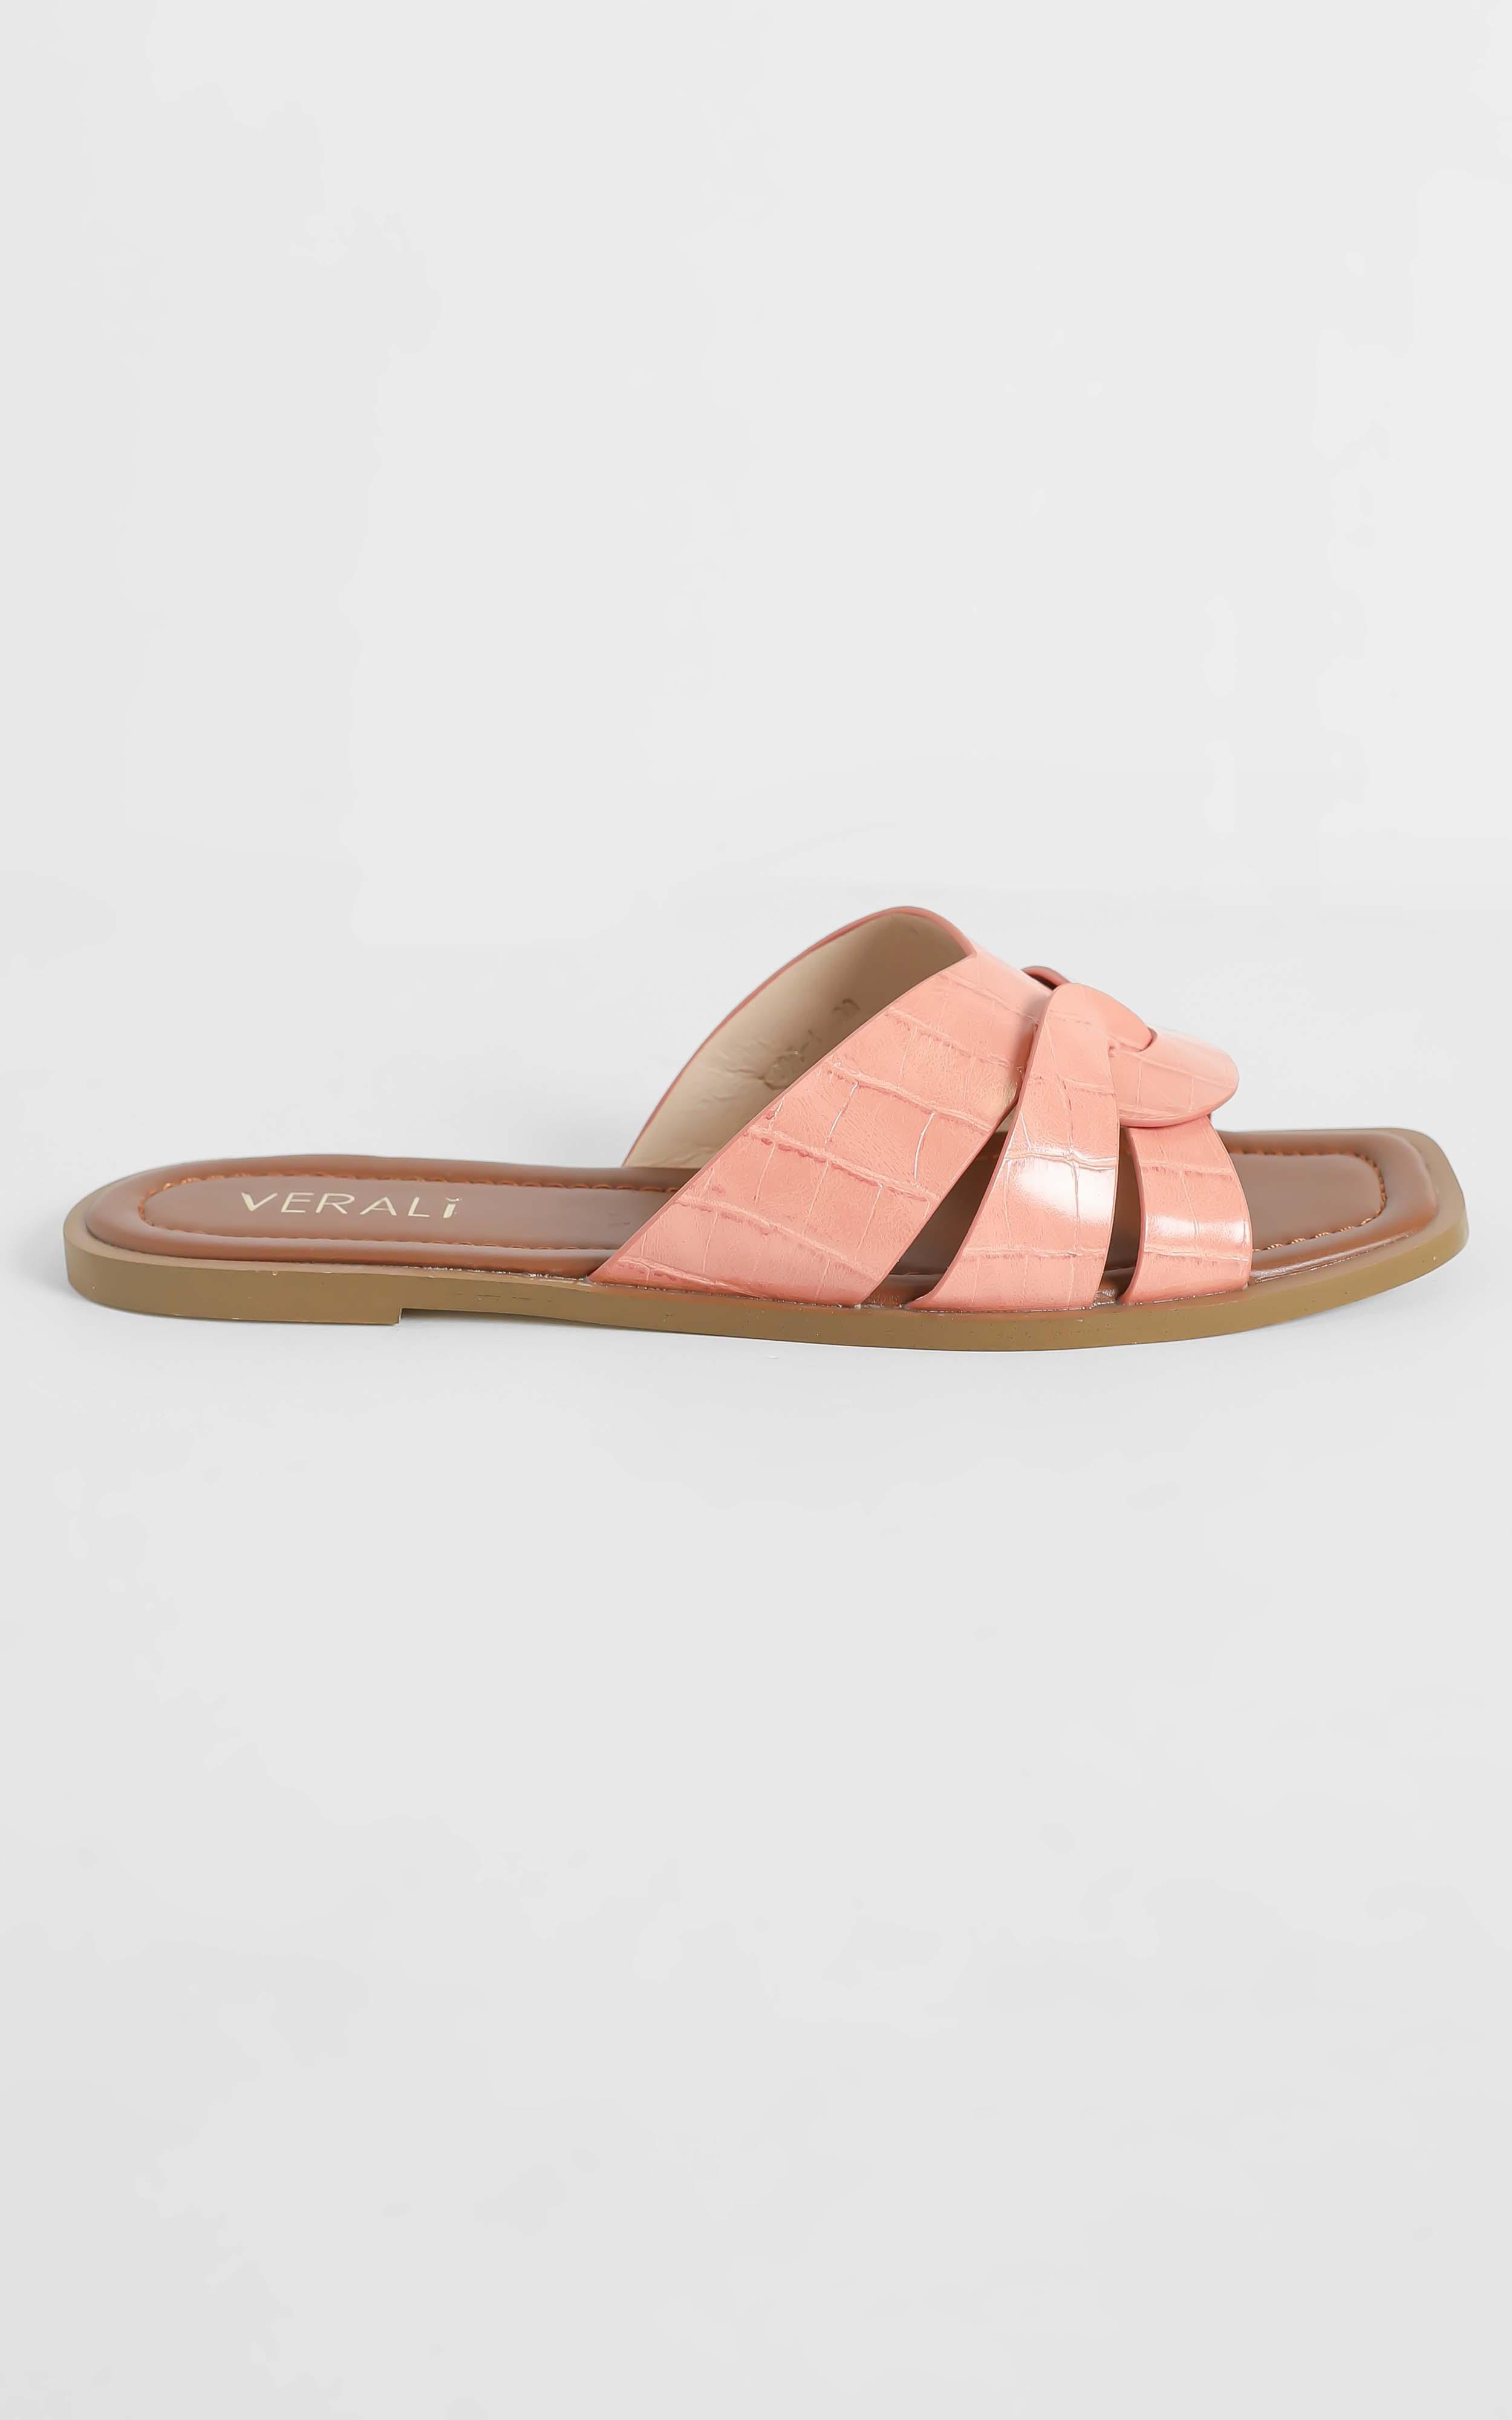 Verali - Glam Sandals in Peach Croc - 05, PNK1, hi-res image number null